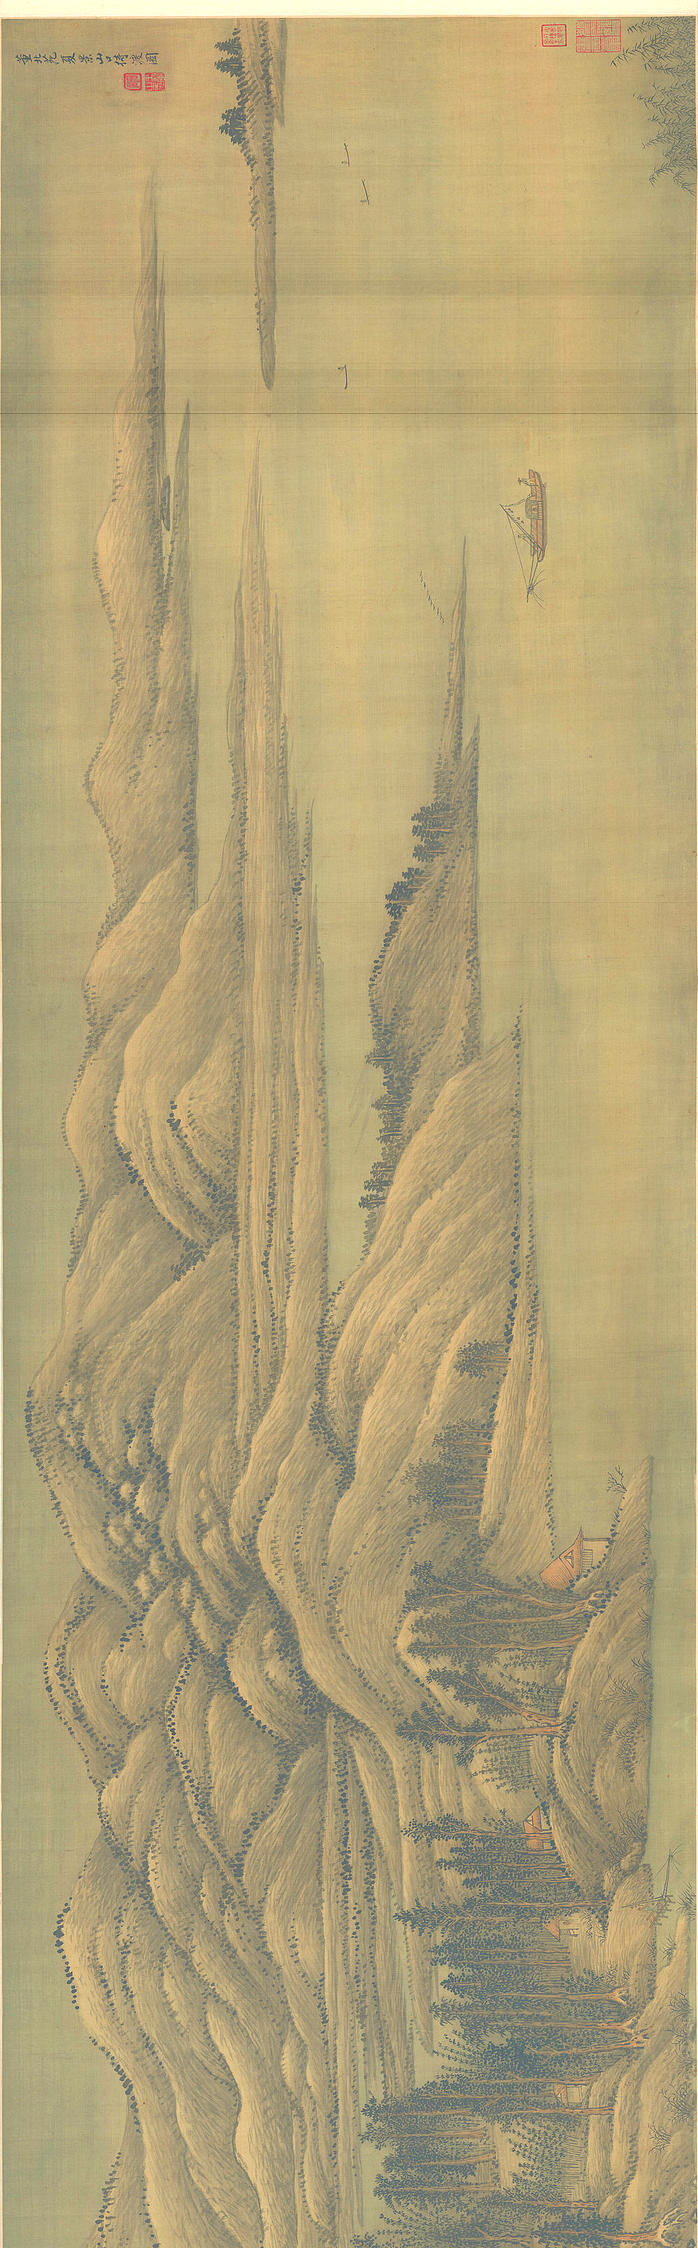 清 王翚 夏景山口待渡图 绢本 1 (19014x5904px 300)